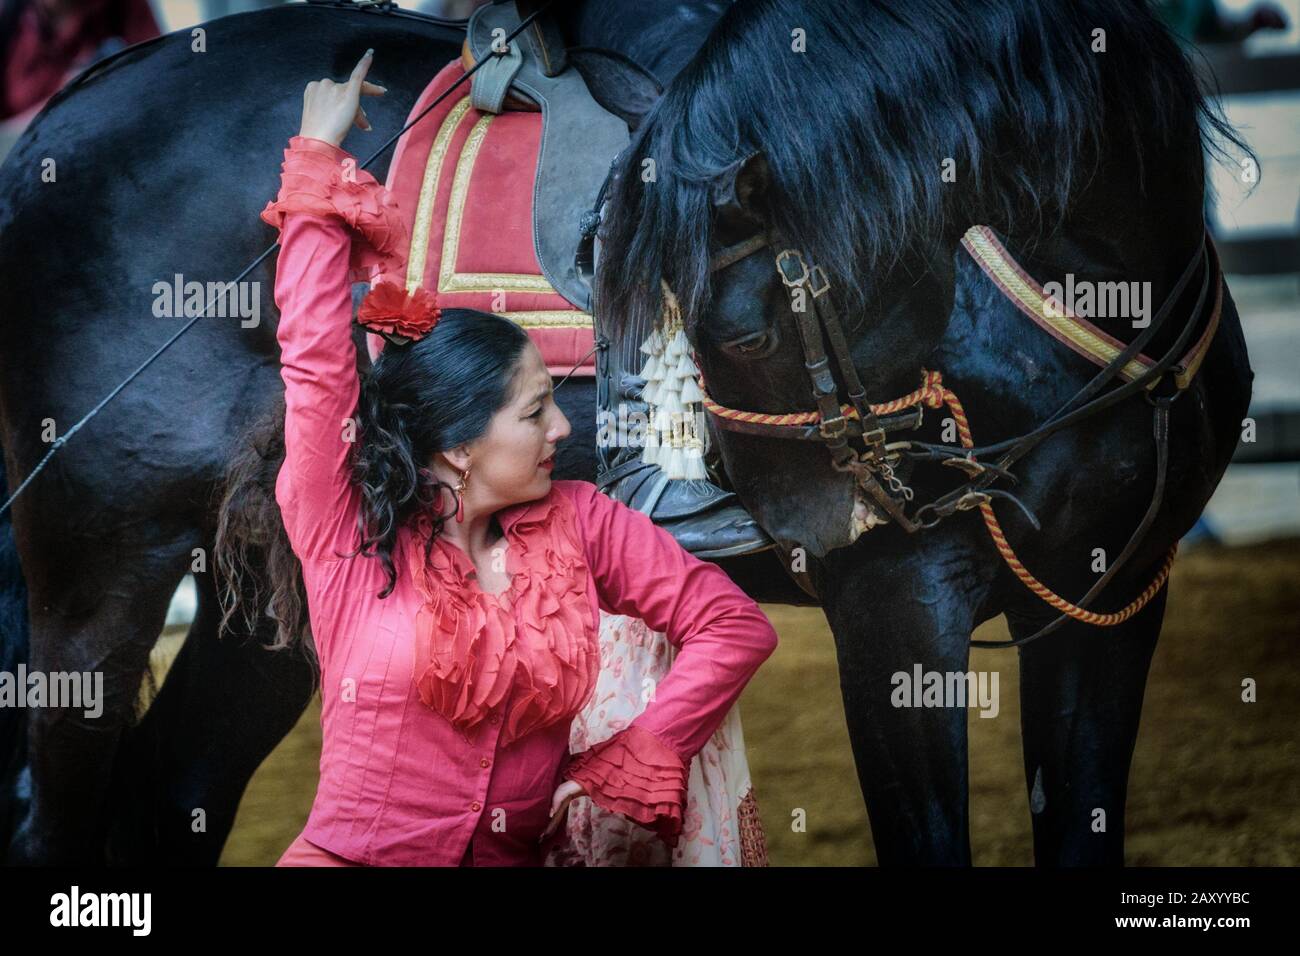 Bailarina flamenca actuando con un caballo, Feria del caballo de Jerez (Feria de caballo) , Jerez de la Frontera, Andalucía, España Foto de stock